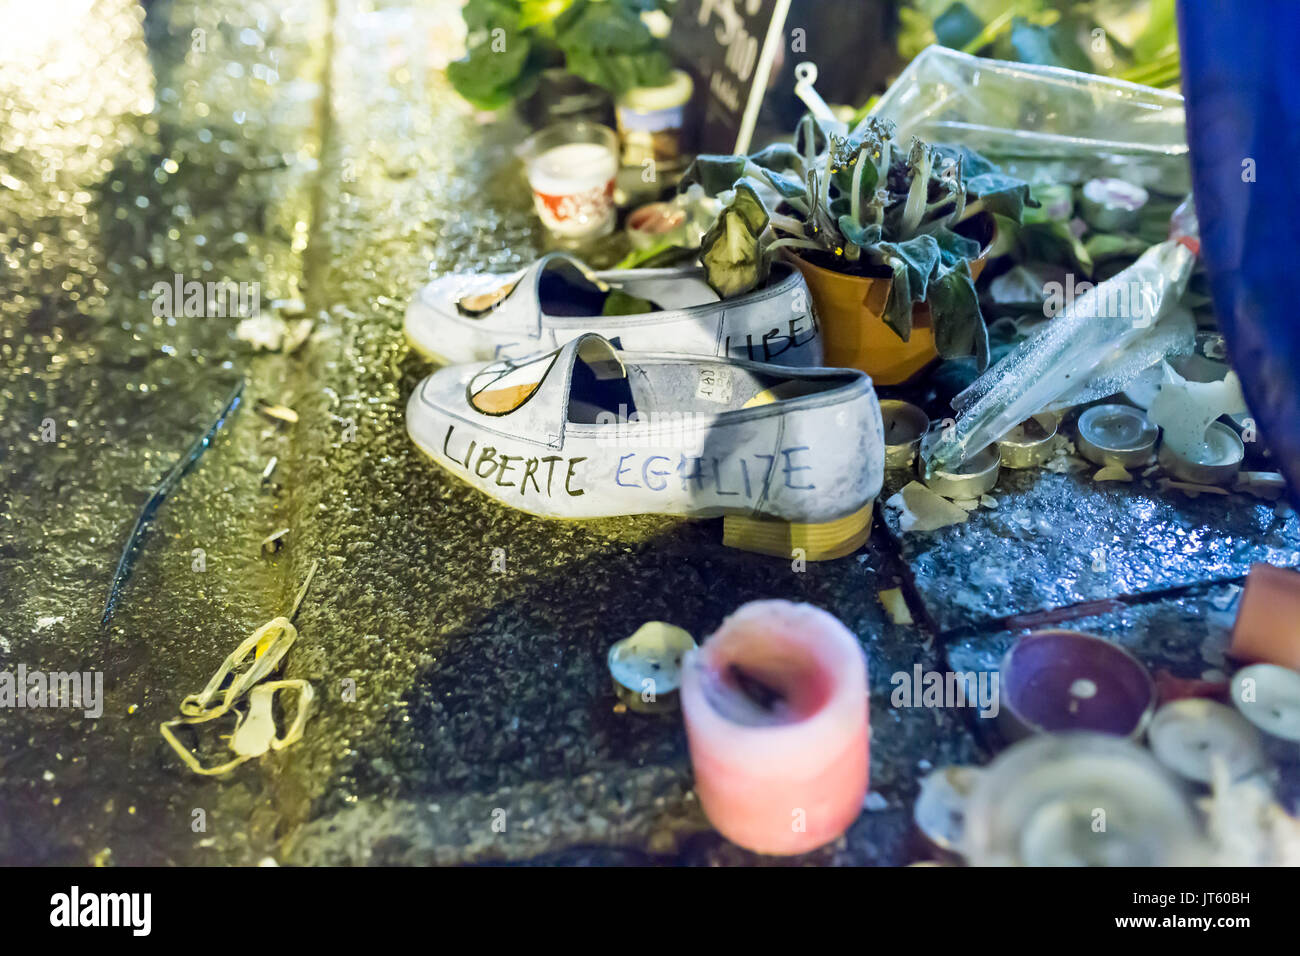 Liberté égalité auf Schuhen (Freiheit Gleichheit). Spontane Hommage an die Opfer der Terroranschläge in Paris, den 13. November 2015. Stockfoto